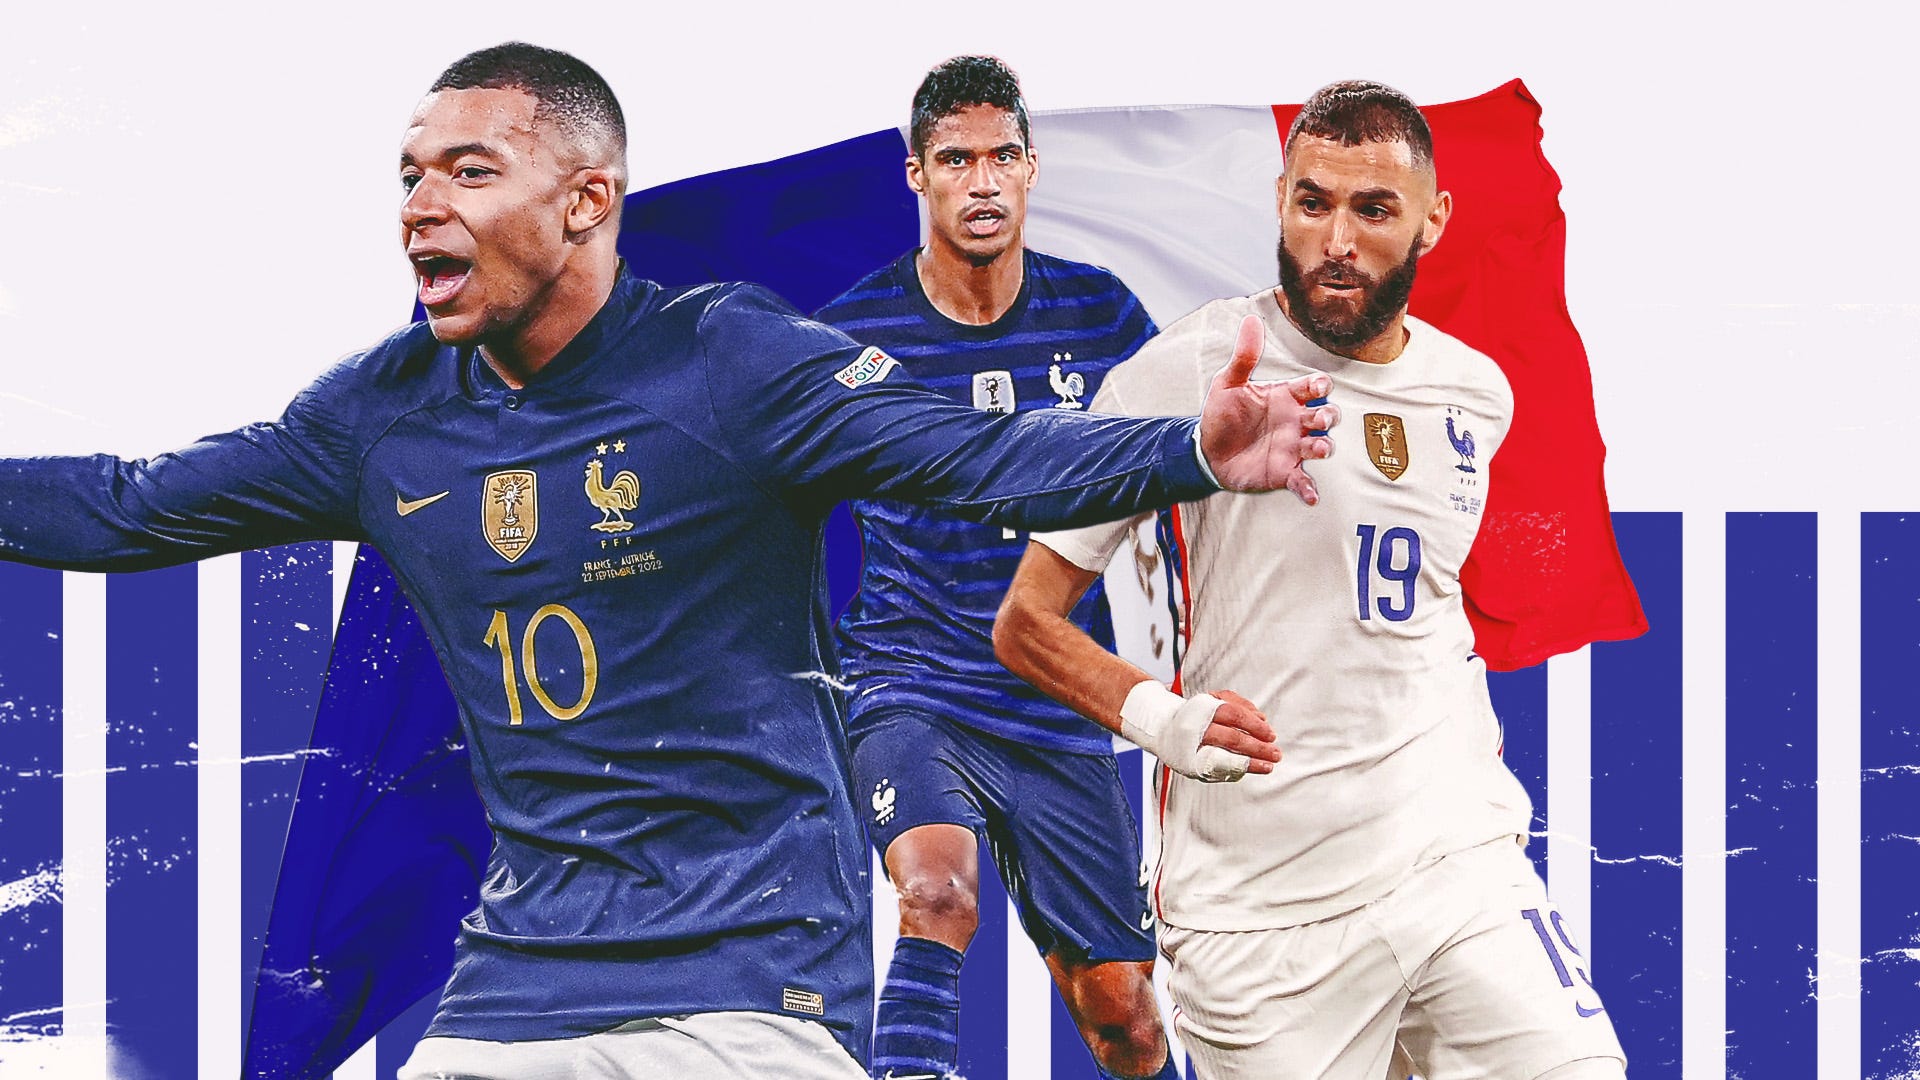 Có bao nhiêu cầu thủ đại diện cho đội tuyển quốc gia Pháp tham gia World Cup 2022?
